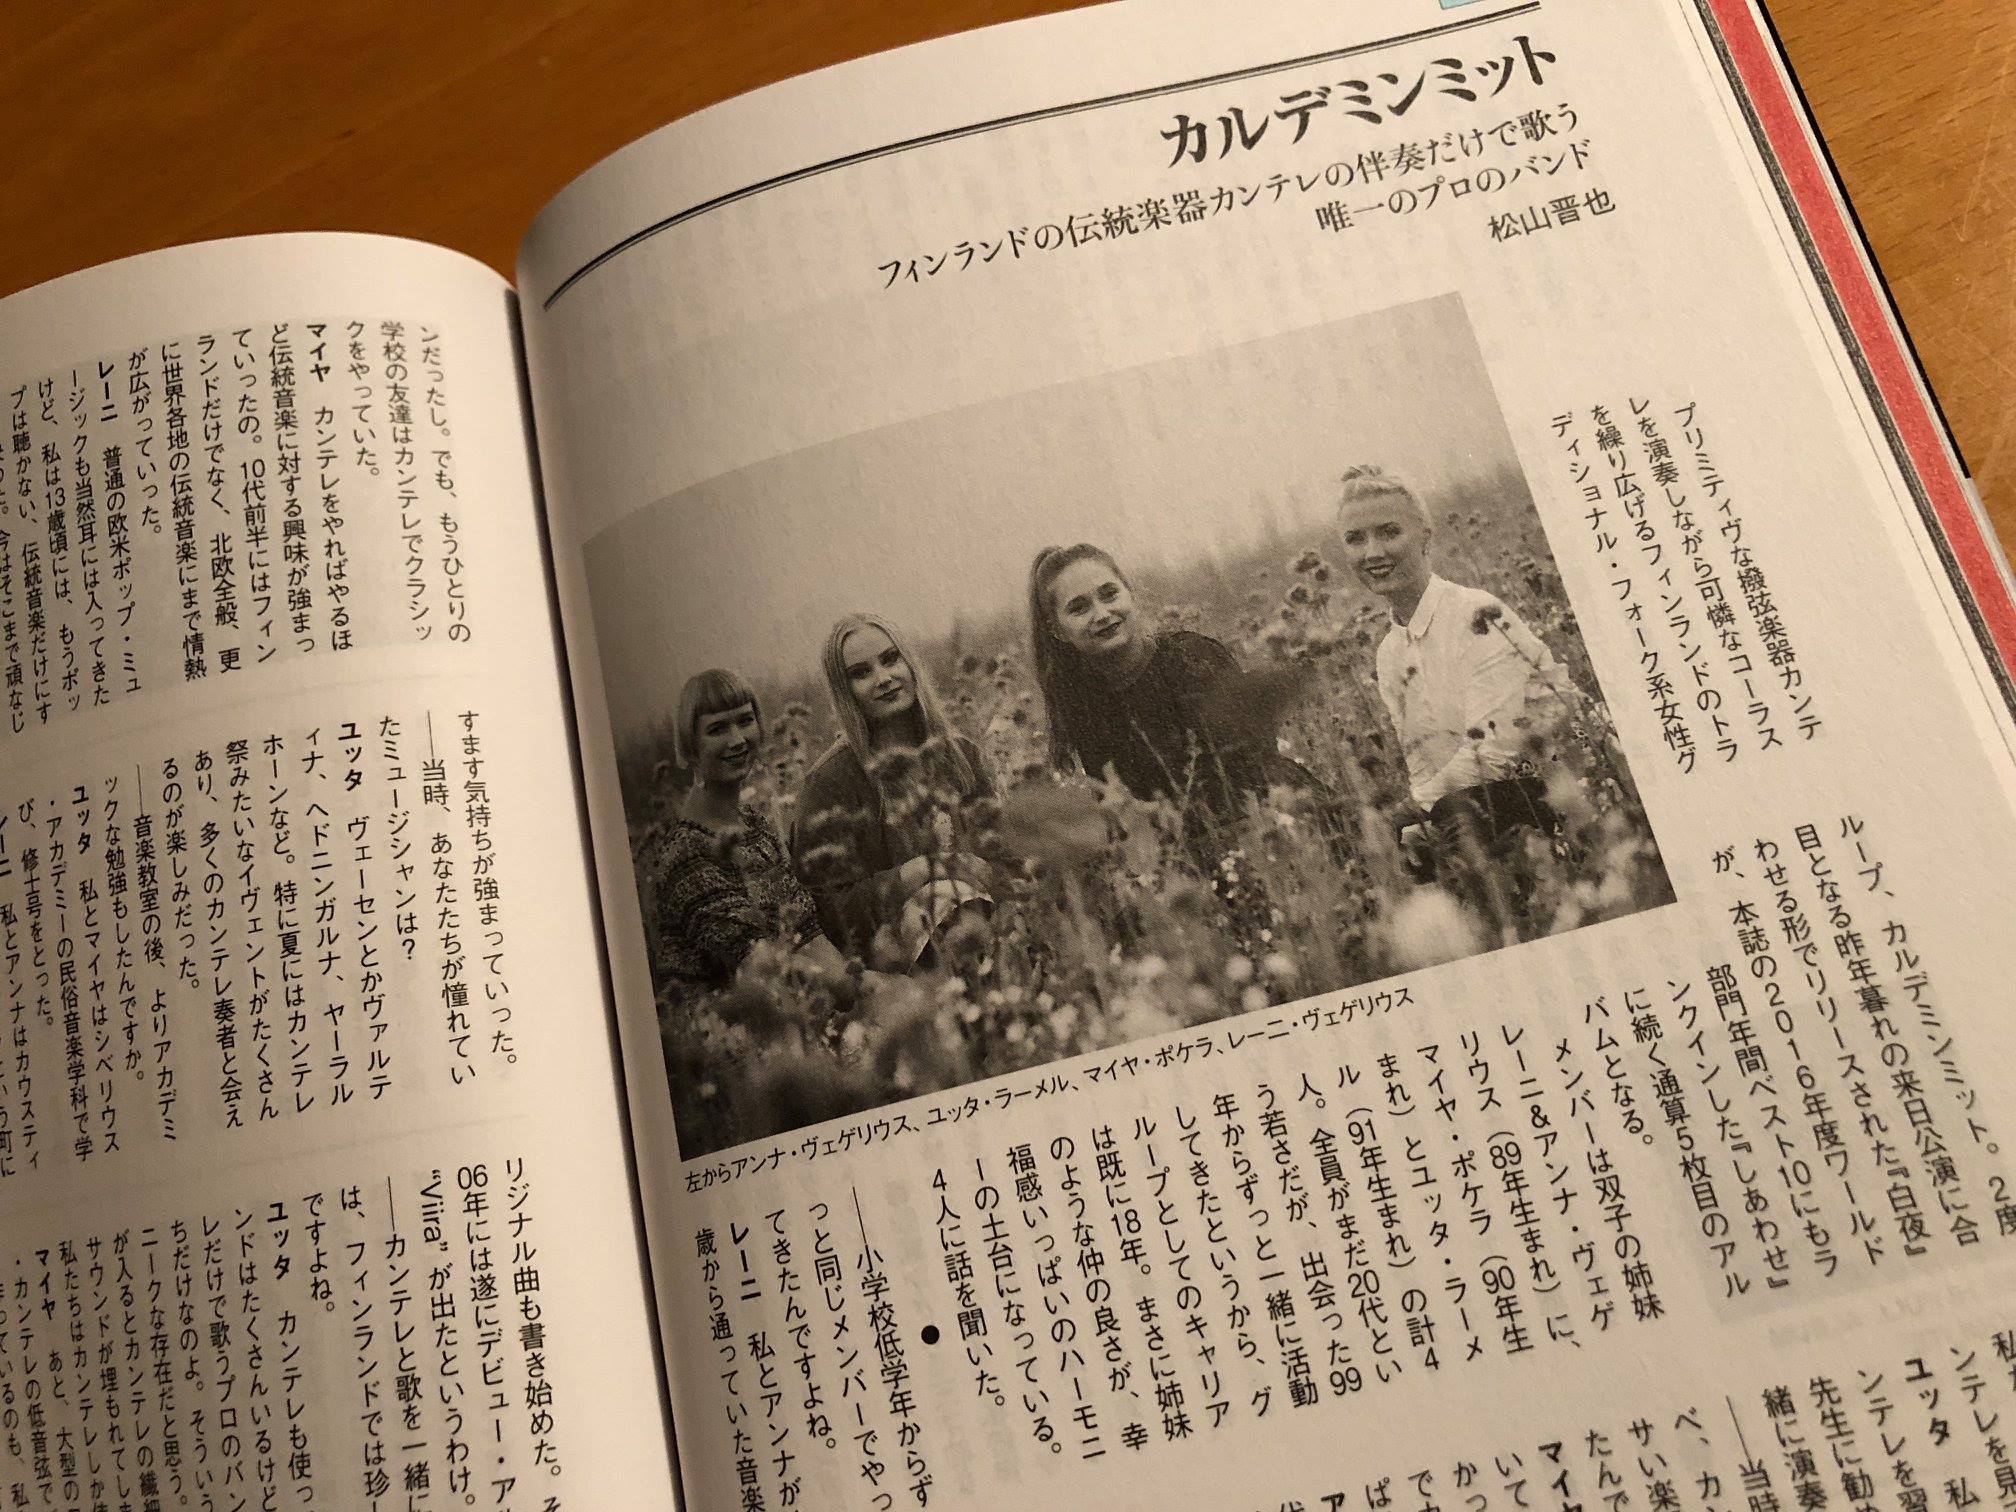 Music Magazine 2018.02 -2